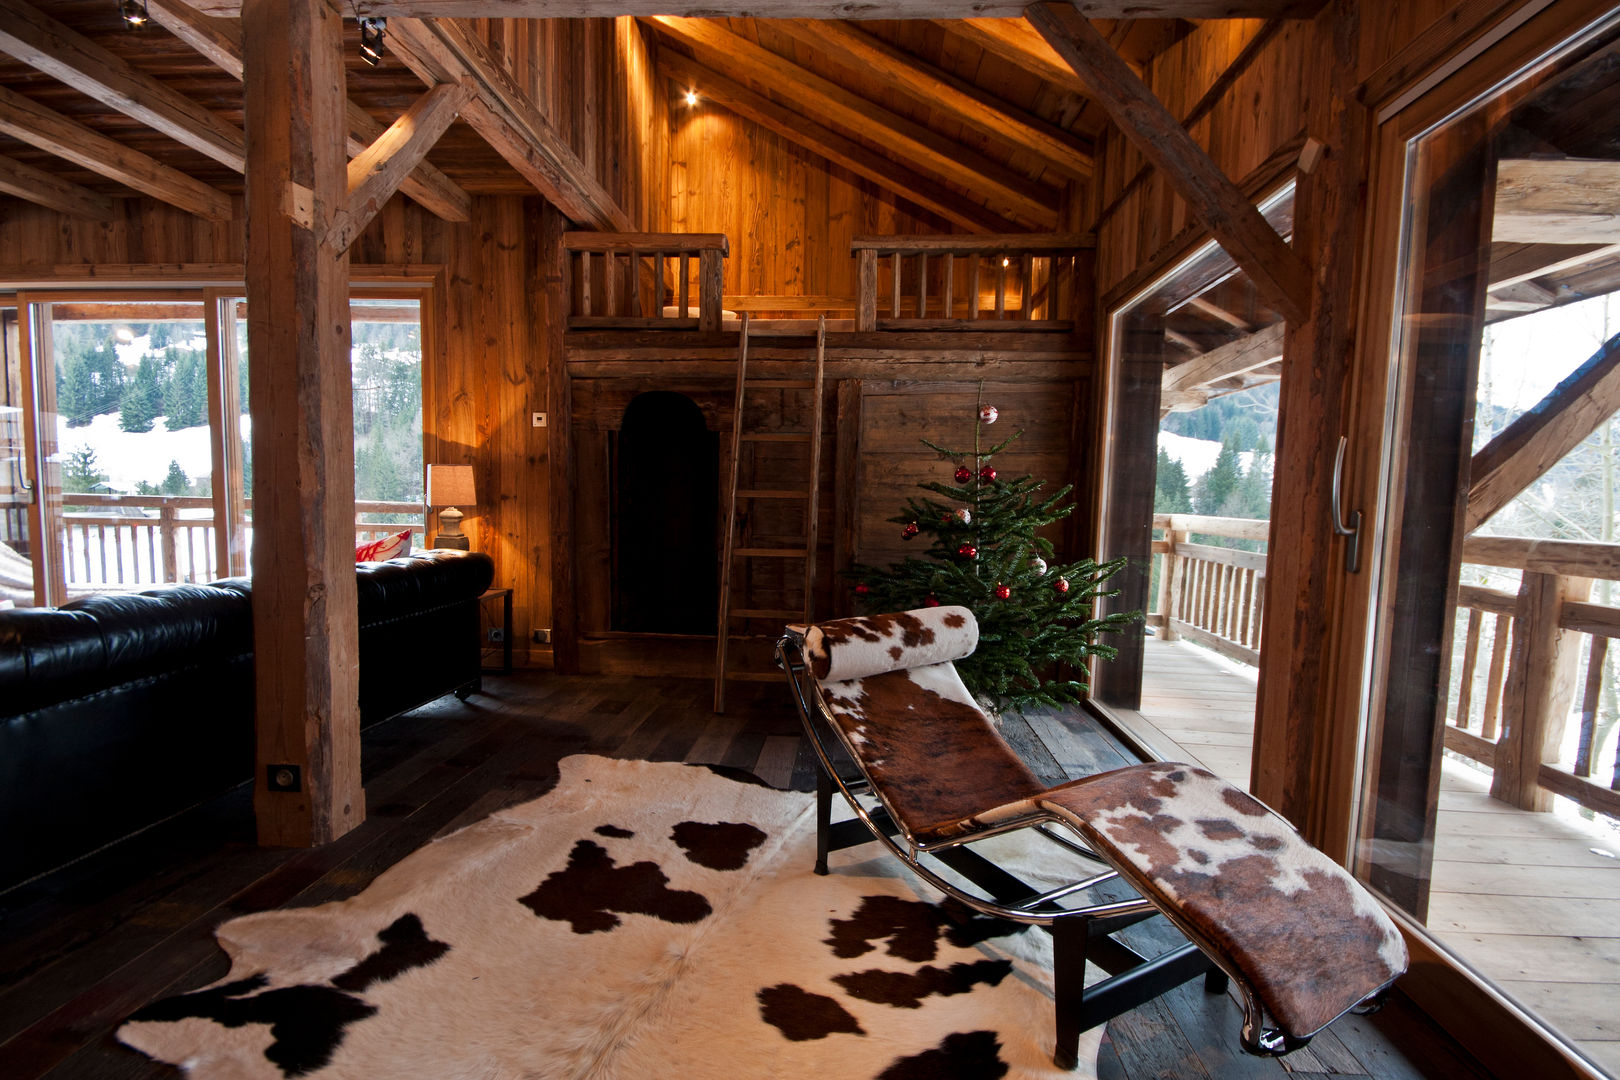 Chalet de Claude: un chalet de luxe, mais distinctif avec un intérieur en rouge et noir, shep&kyles design shep&kyles design Country style living room